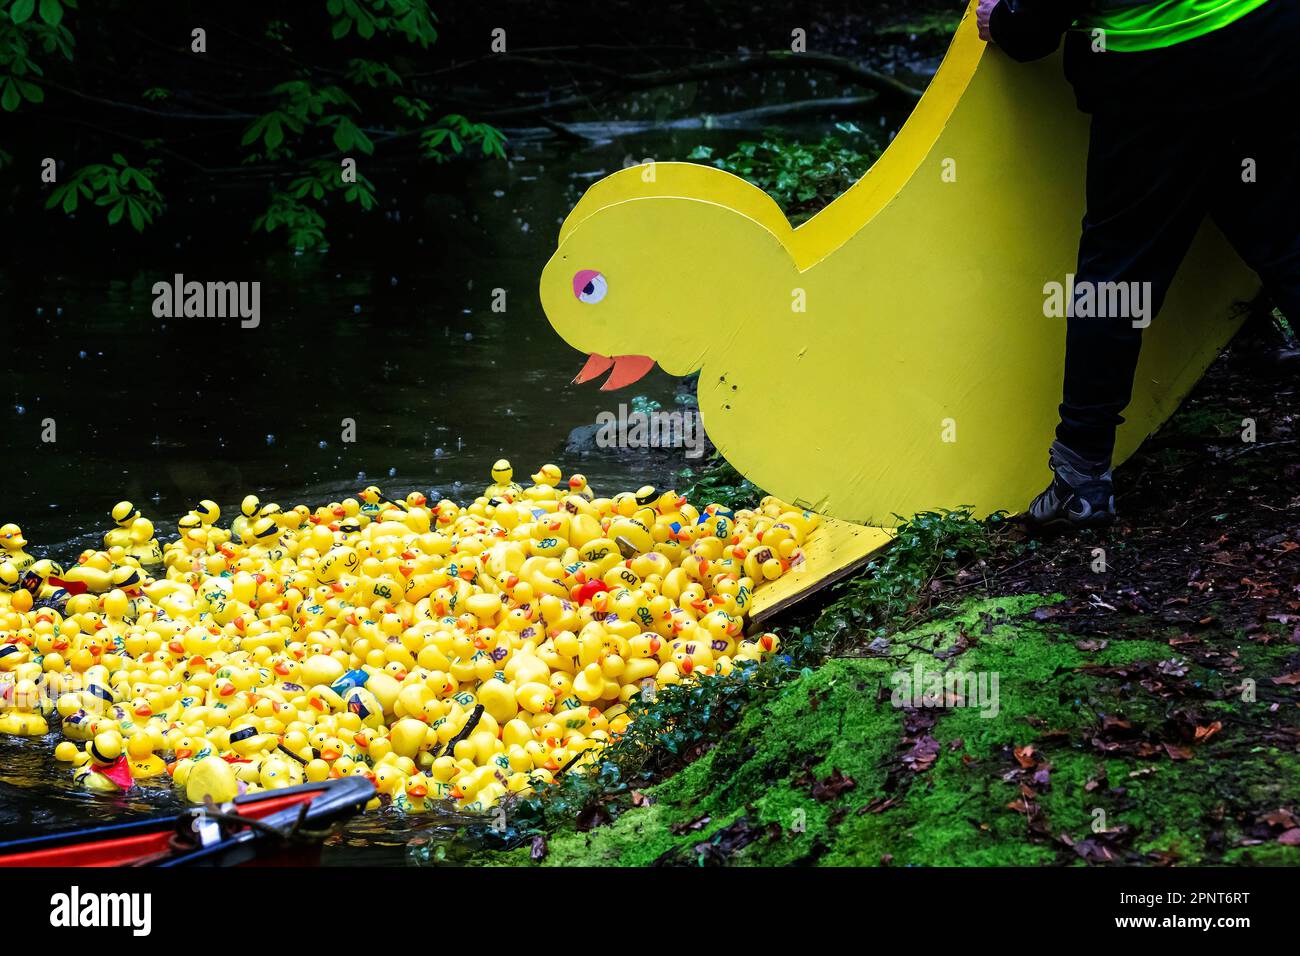 Zu Beginn des Lymm Duck Race 2023 werden Hunderte gelber Enten aus einem enttenförmigen Behälter auf das Wasser freigesetzt Stockfoto